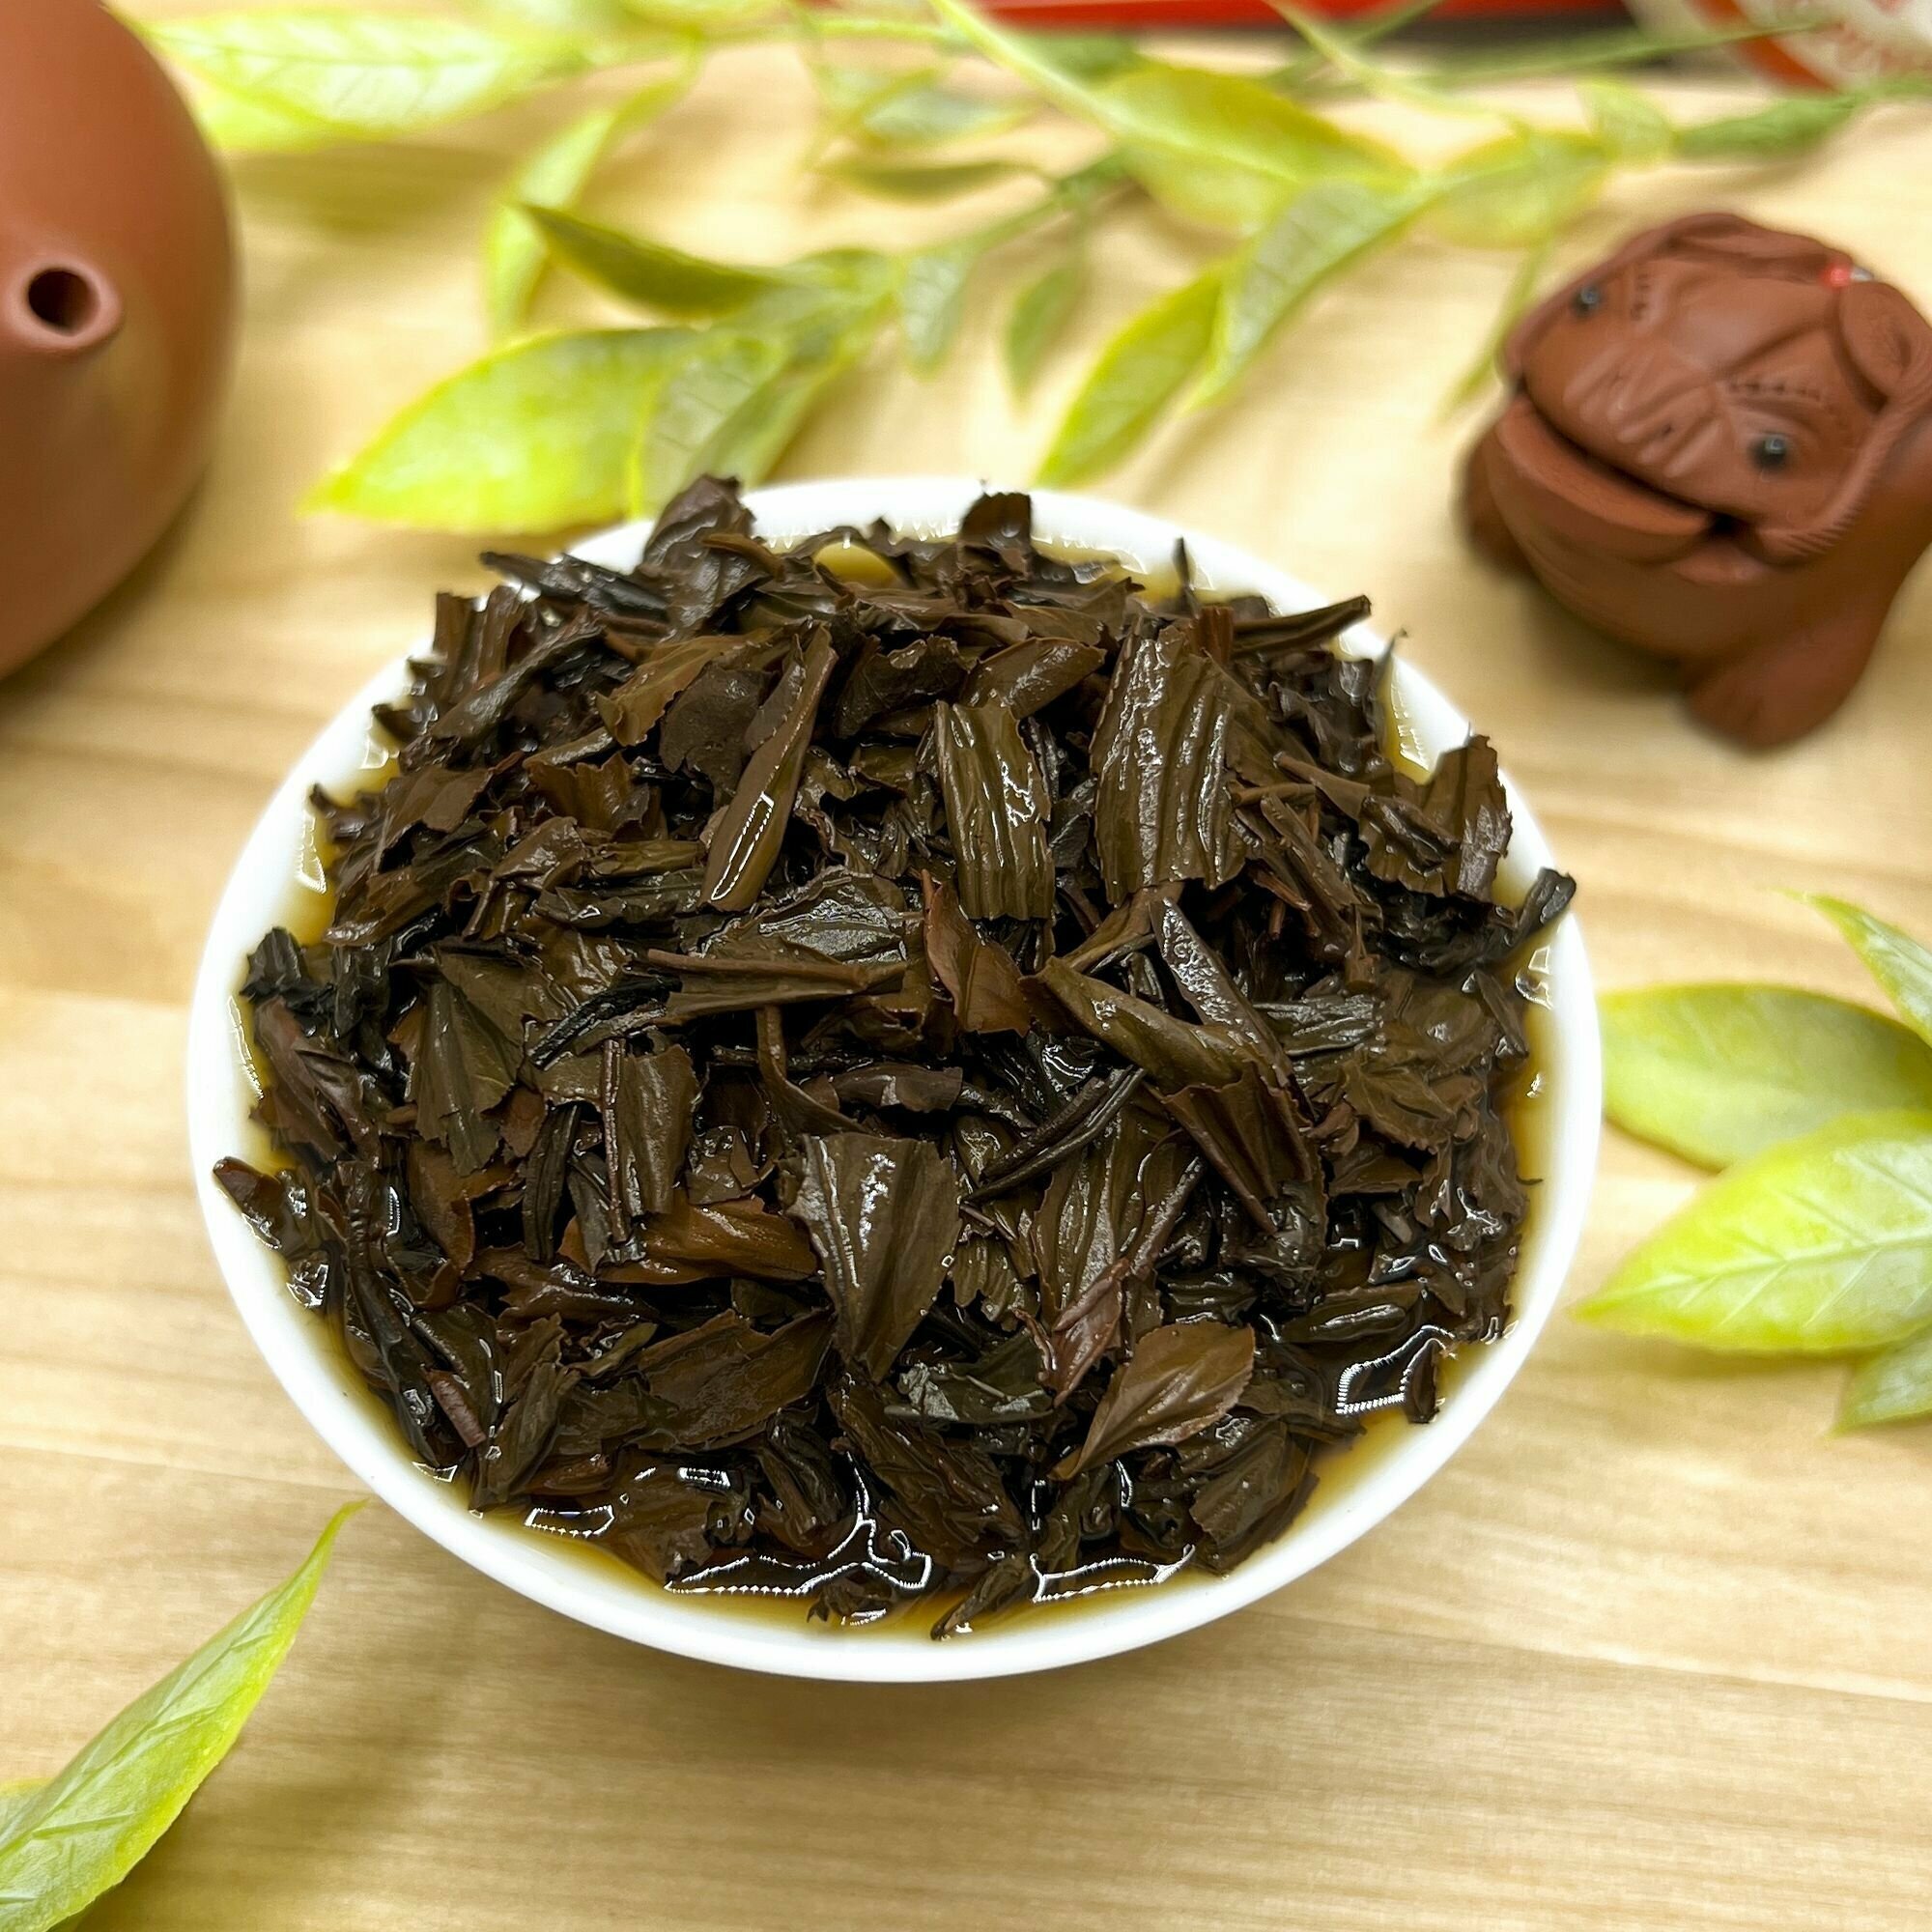 Китайский красный чай Ли Чжи Хун Ча (с Ли Чжи) Полезный чай / HEALTHY TEA, 100 г